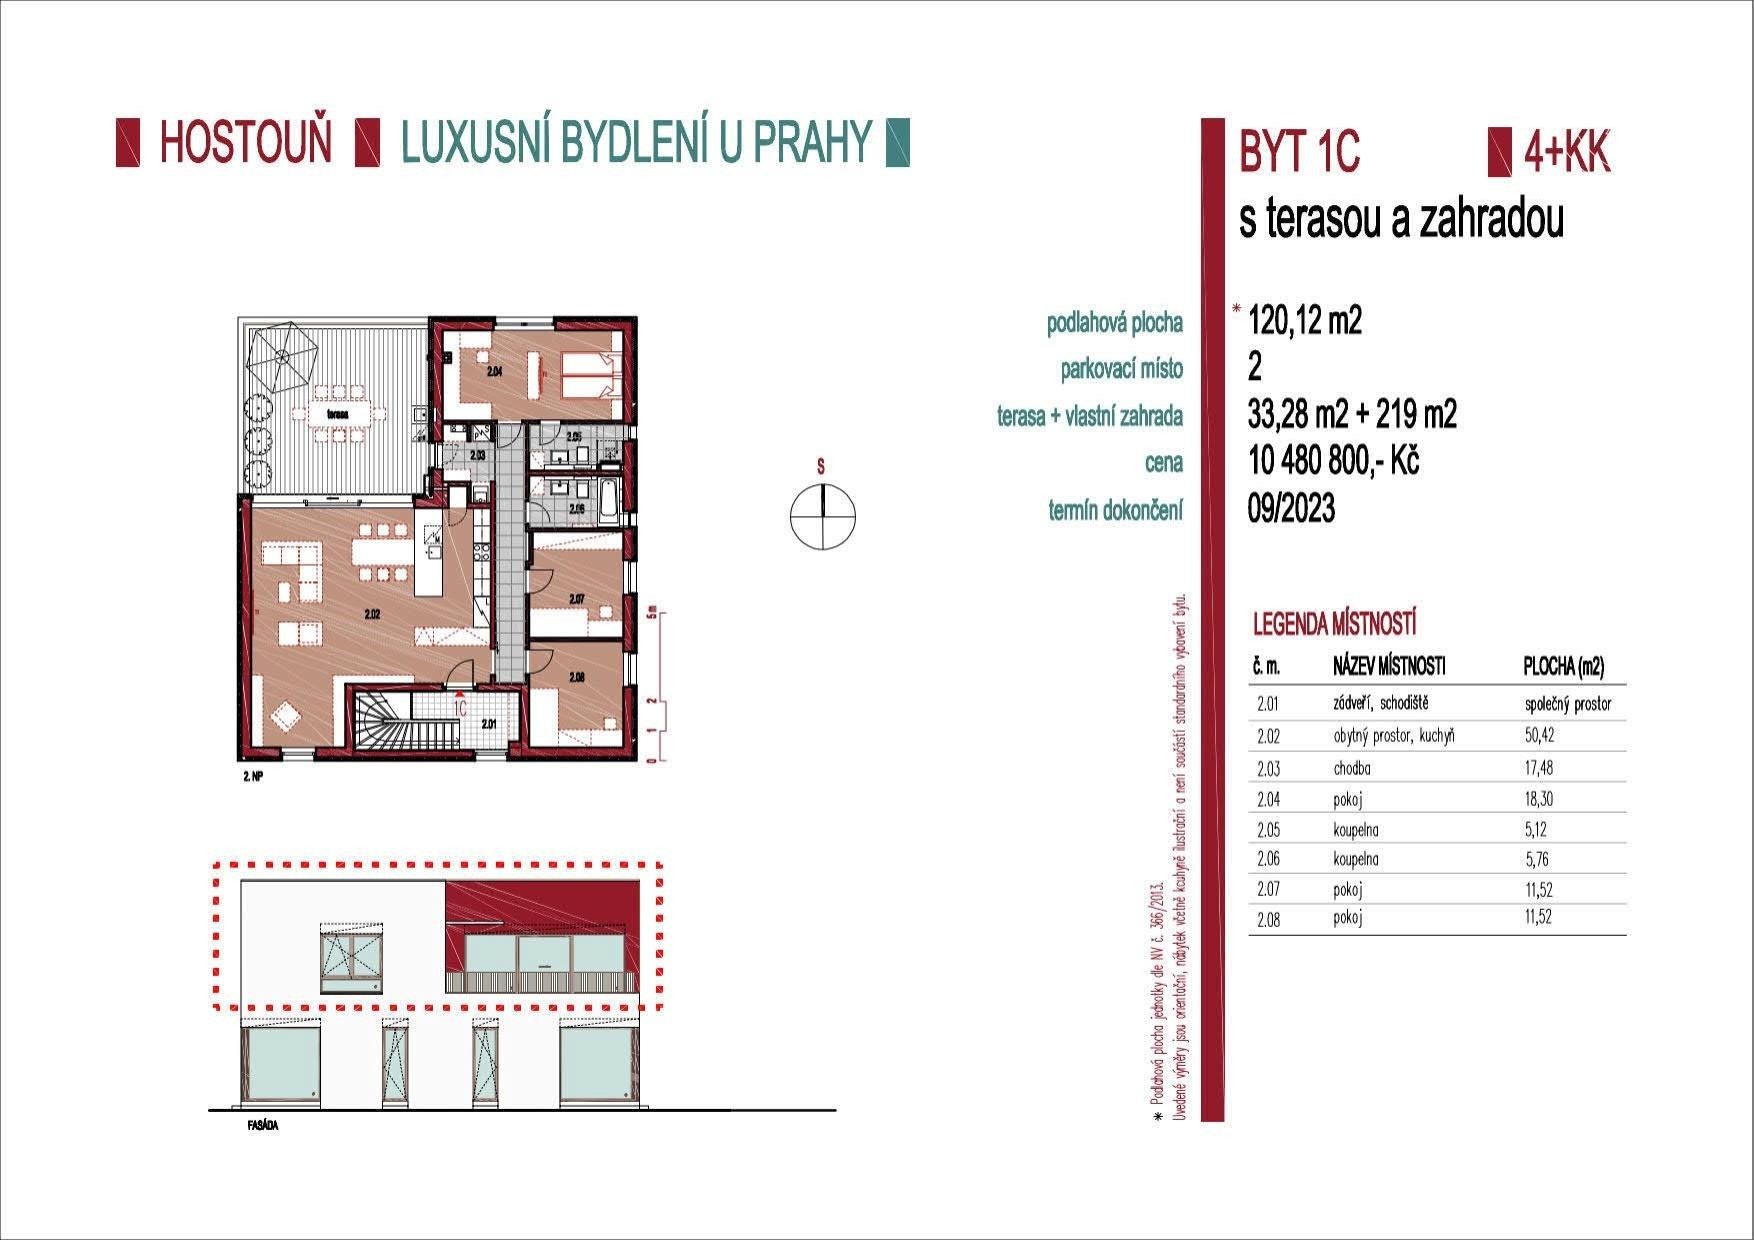 Nádherný nový byt 4+kk 120m2 se zahrádkou 219m2, terasou 33m2 a dvěma parkovacími stánímy